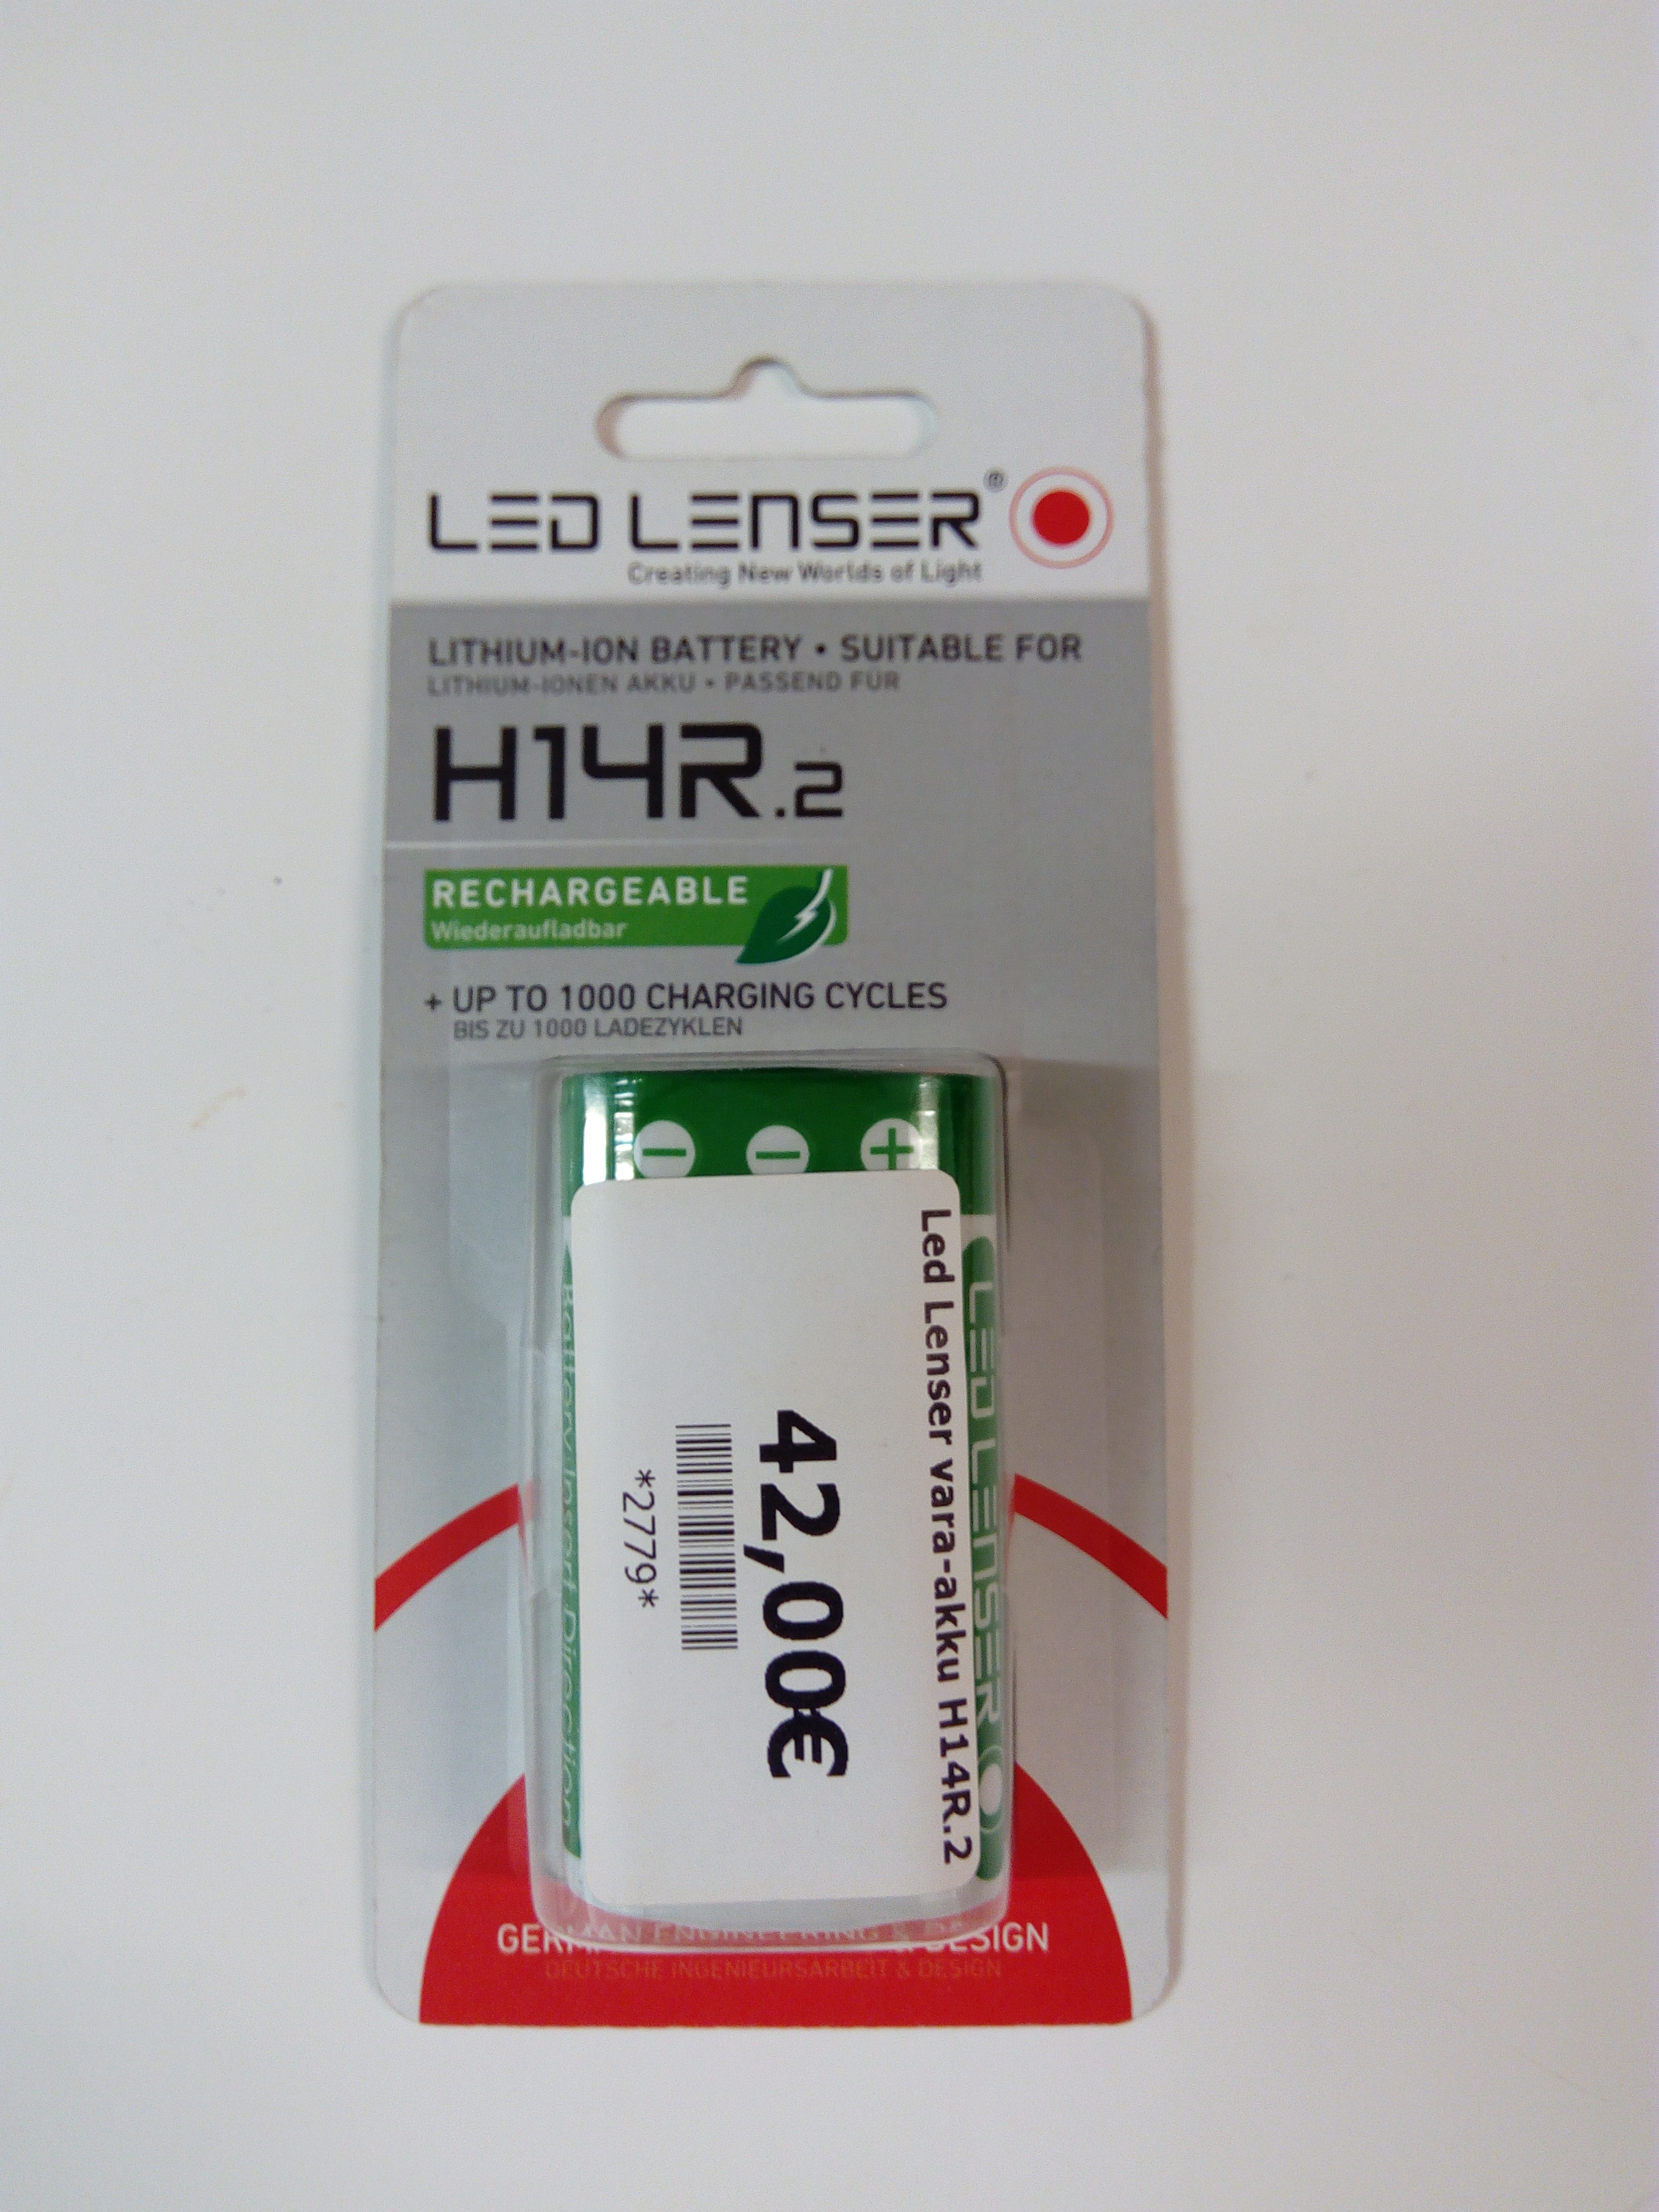 Led Lenser vara-akku H14R.2                                                                                   